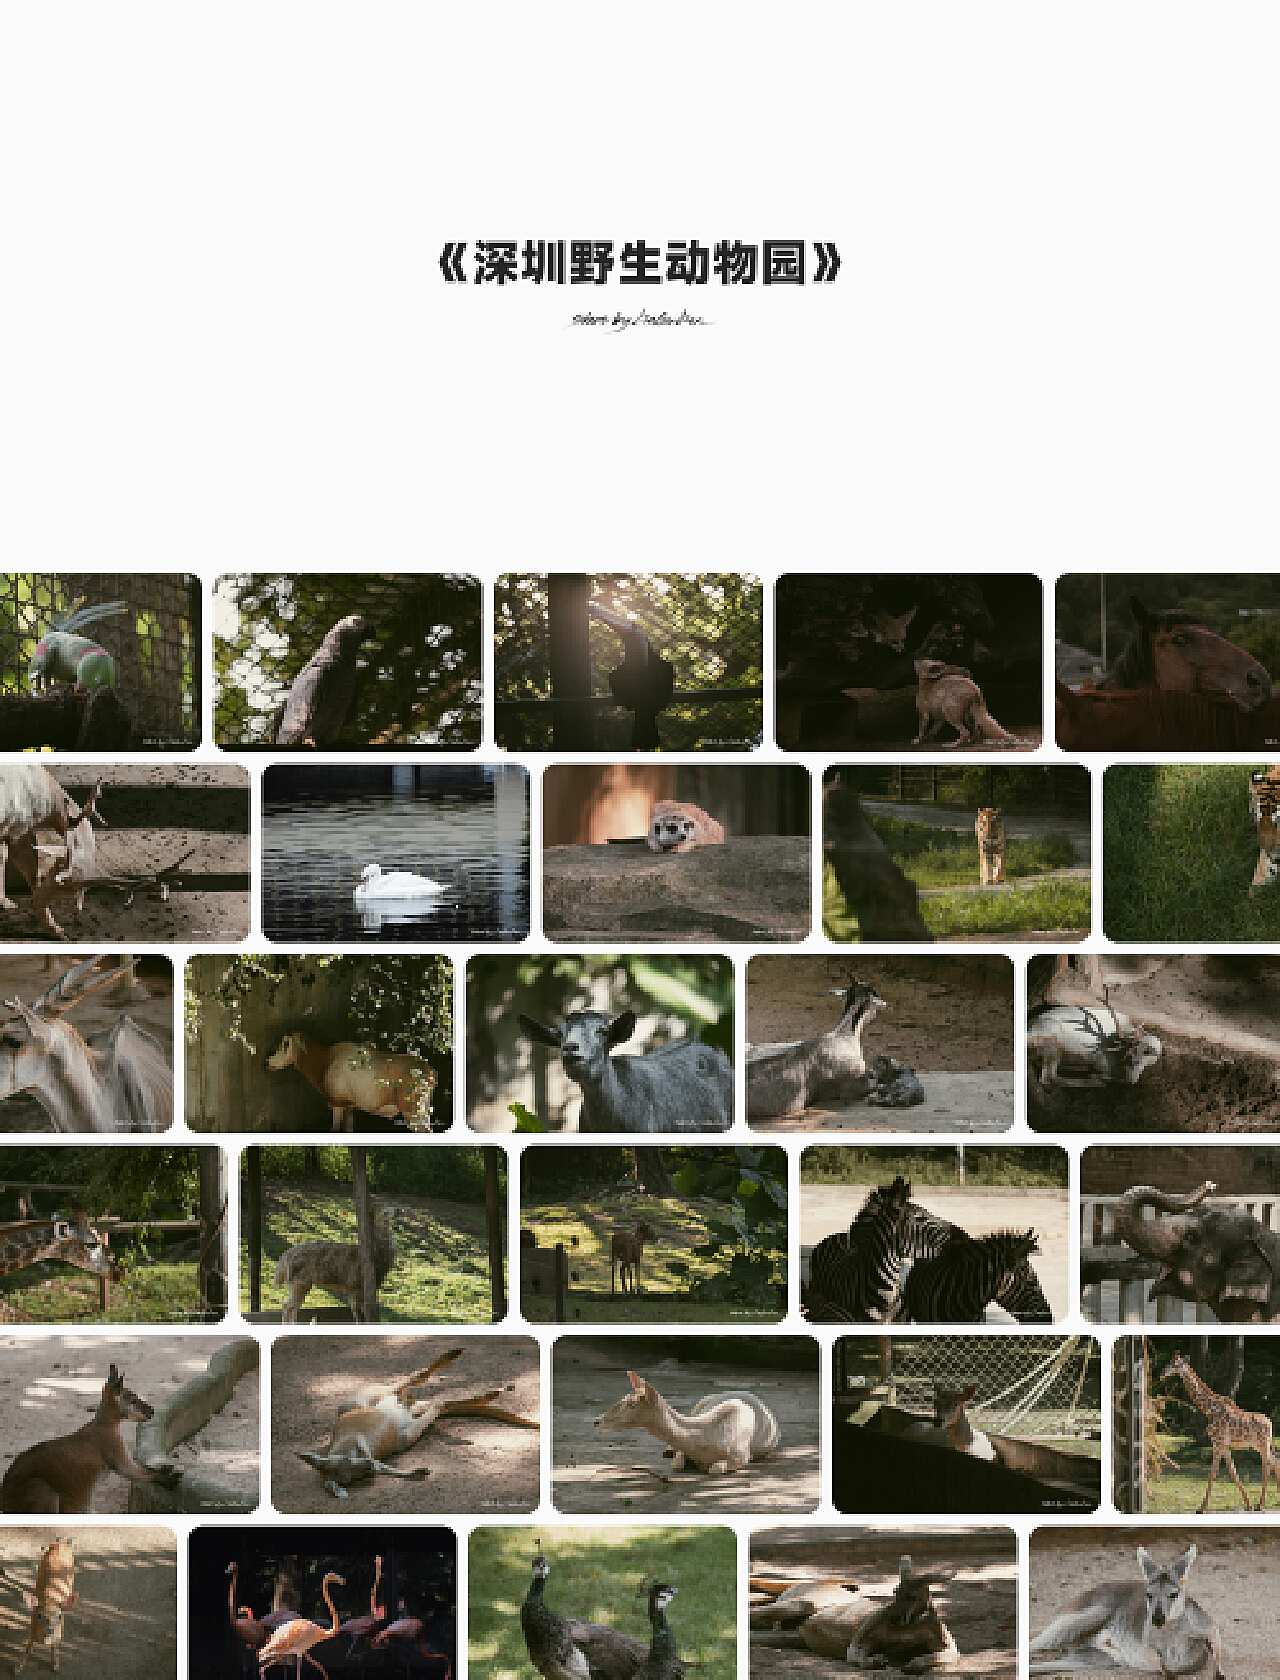 【携程攻略】深圳深圳野生动物园景点,有优惠活动的时候(99.9))可以带着宝宝去玩一下，其他都普通，普通的…